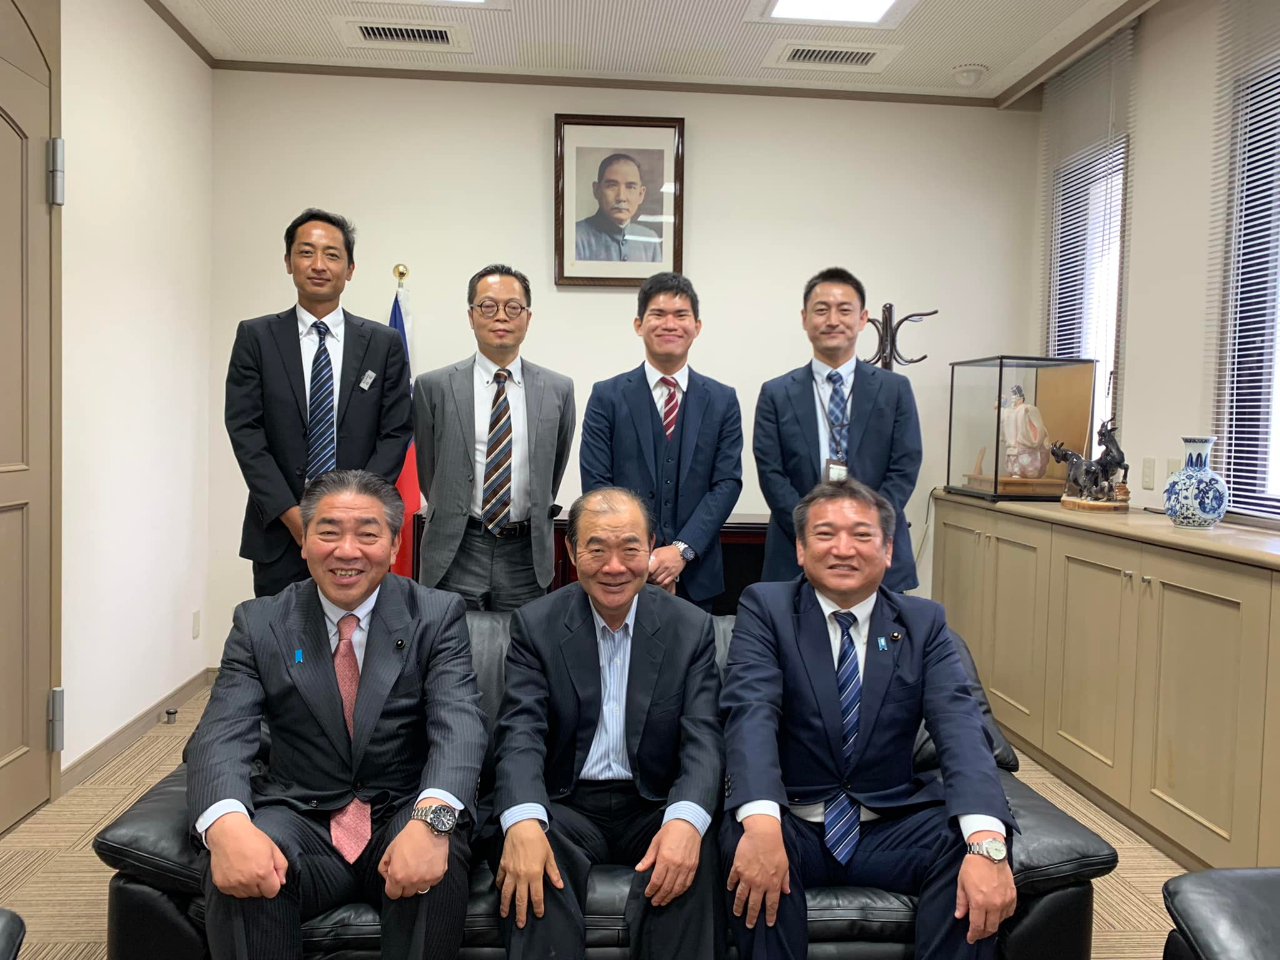 熊本県新着議長渕上陽一と副議長內野幸喜は6月27日本処を表敬訪問し、台熊の交流について意見交換。